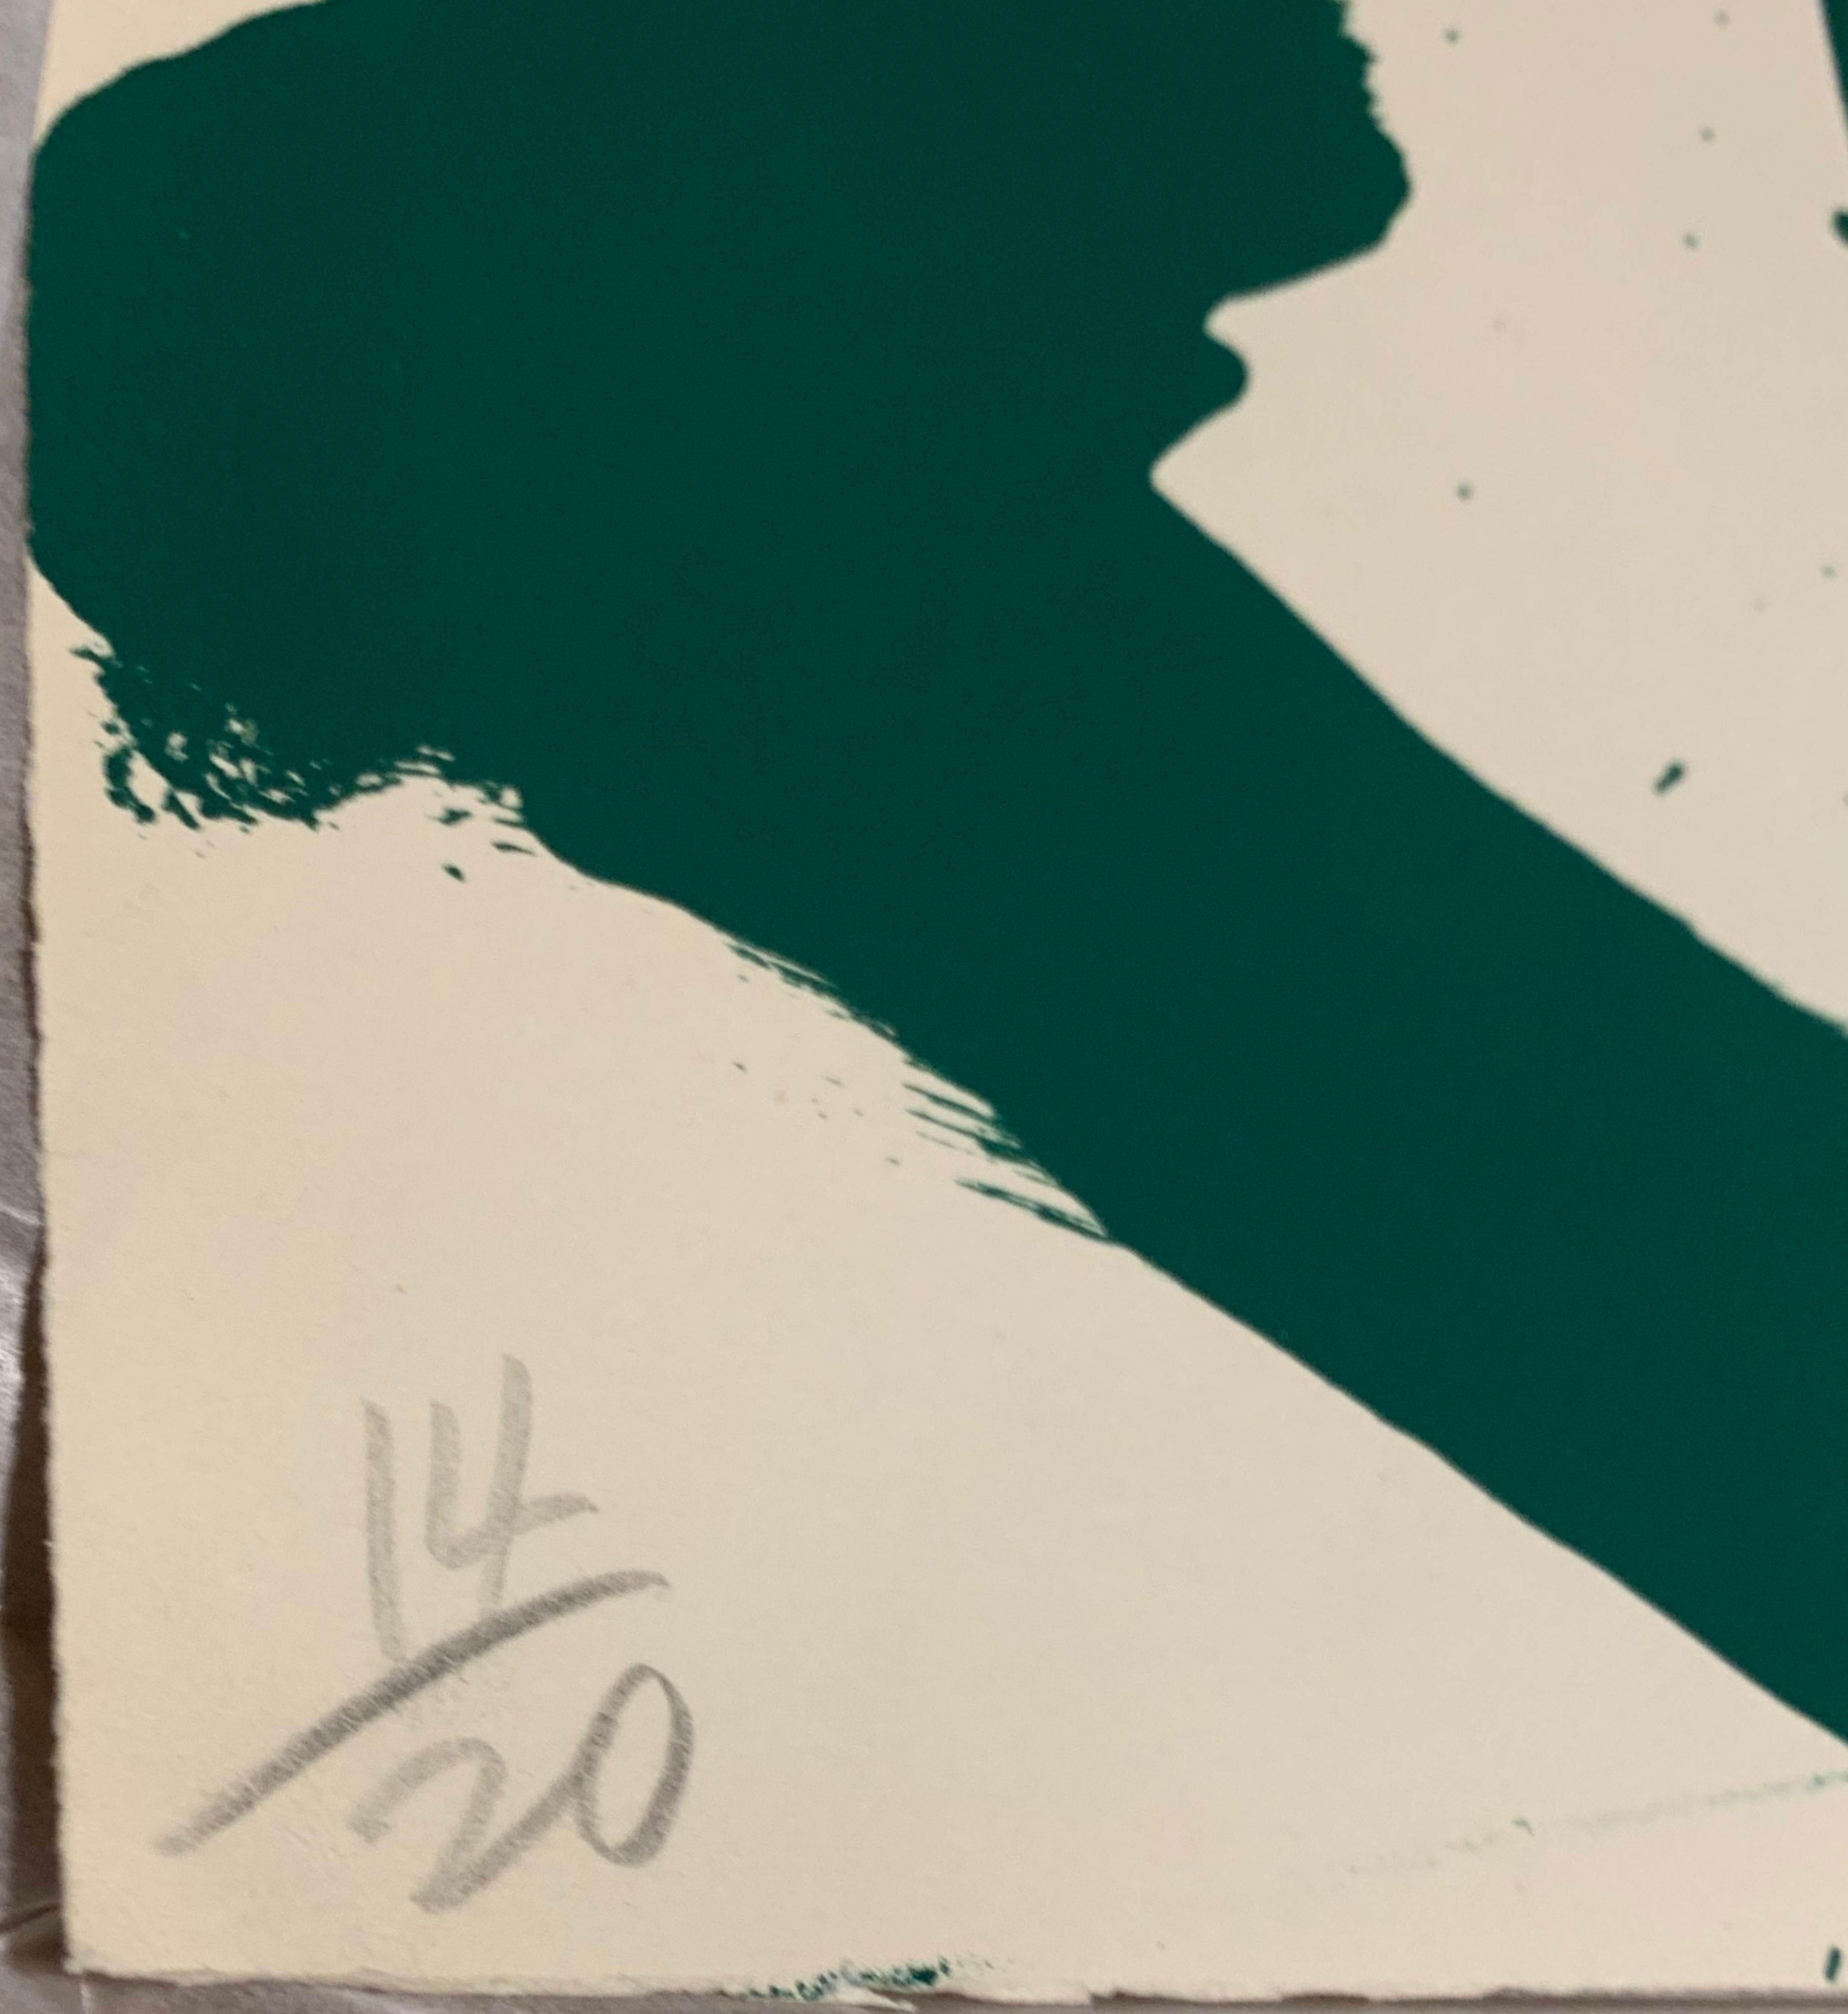 WALASSE TING
Grüne Bombe, 1964
Farblithographie auf Rives BFK Papier
28 × 38 Zoll
Signiert und nummeriert 14/20 in Graphitstift auf der Vorderseite
Veröffentlicht von: Tamarind Institute, USA
Ungerahmt
Provenienz: Anderson Gallery, Buffalo, New